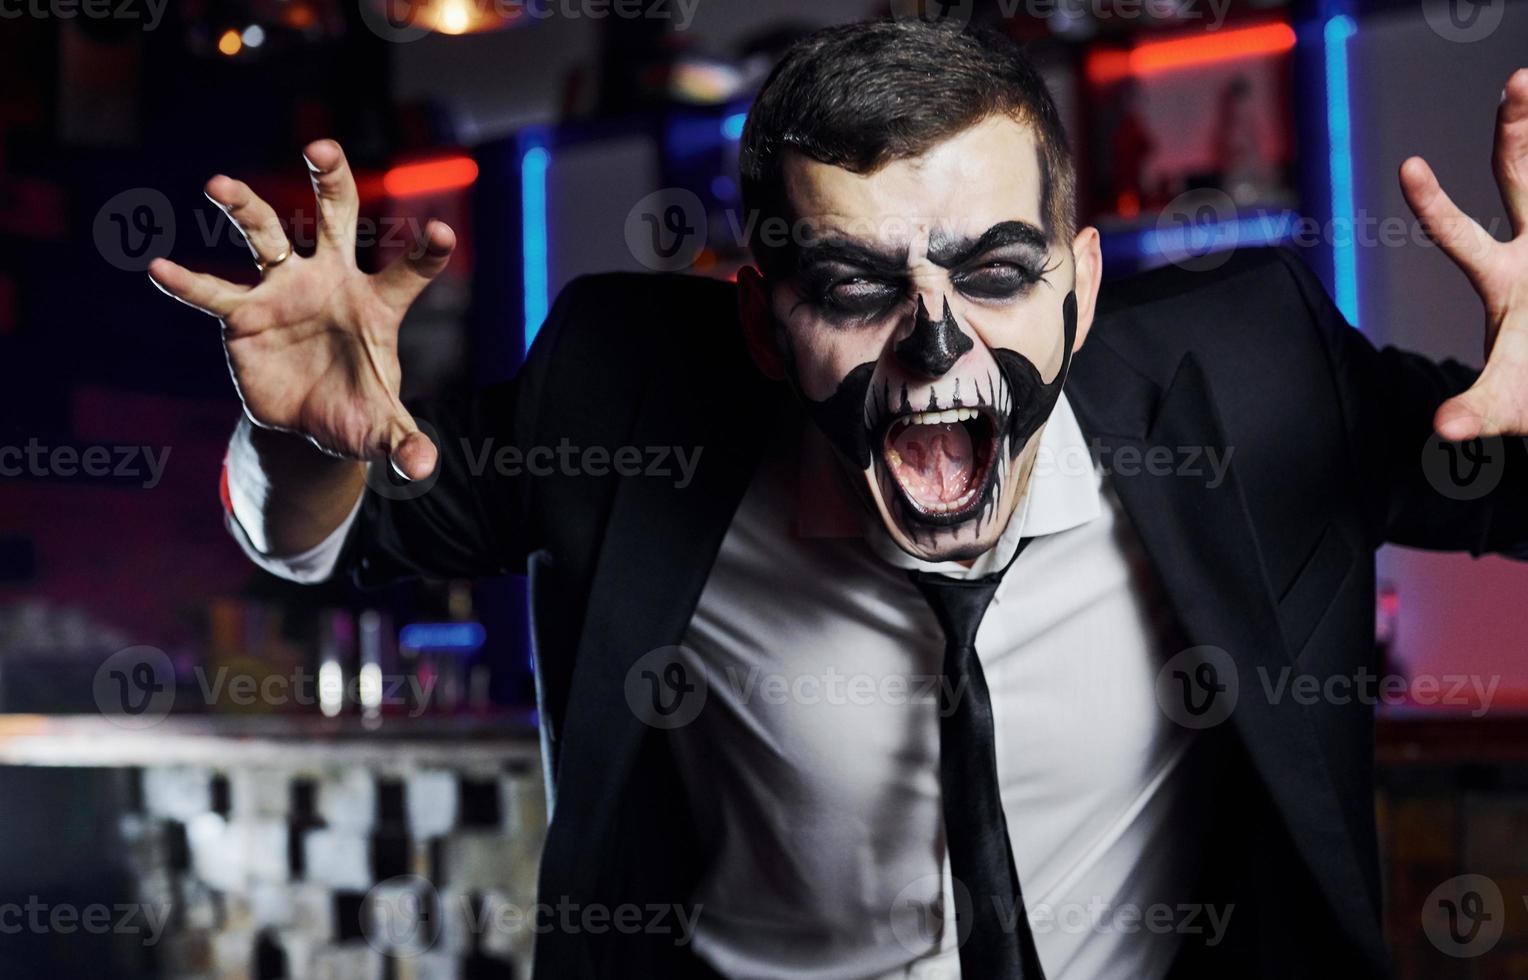 in die Kamera schreien. Porträt eines Mannes, der auf der thematischen Halloween-Party in gruseligem Skelett-Make-up und Kostüm ist foto